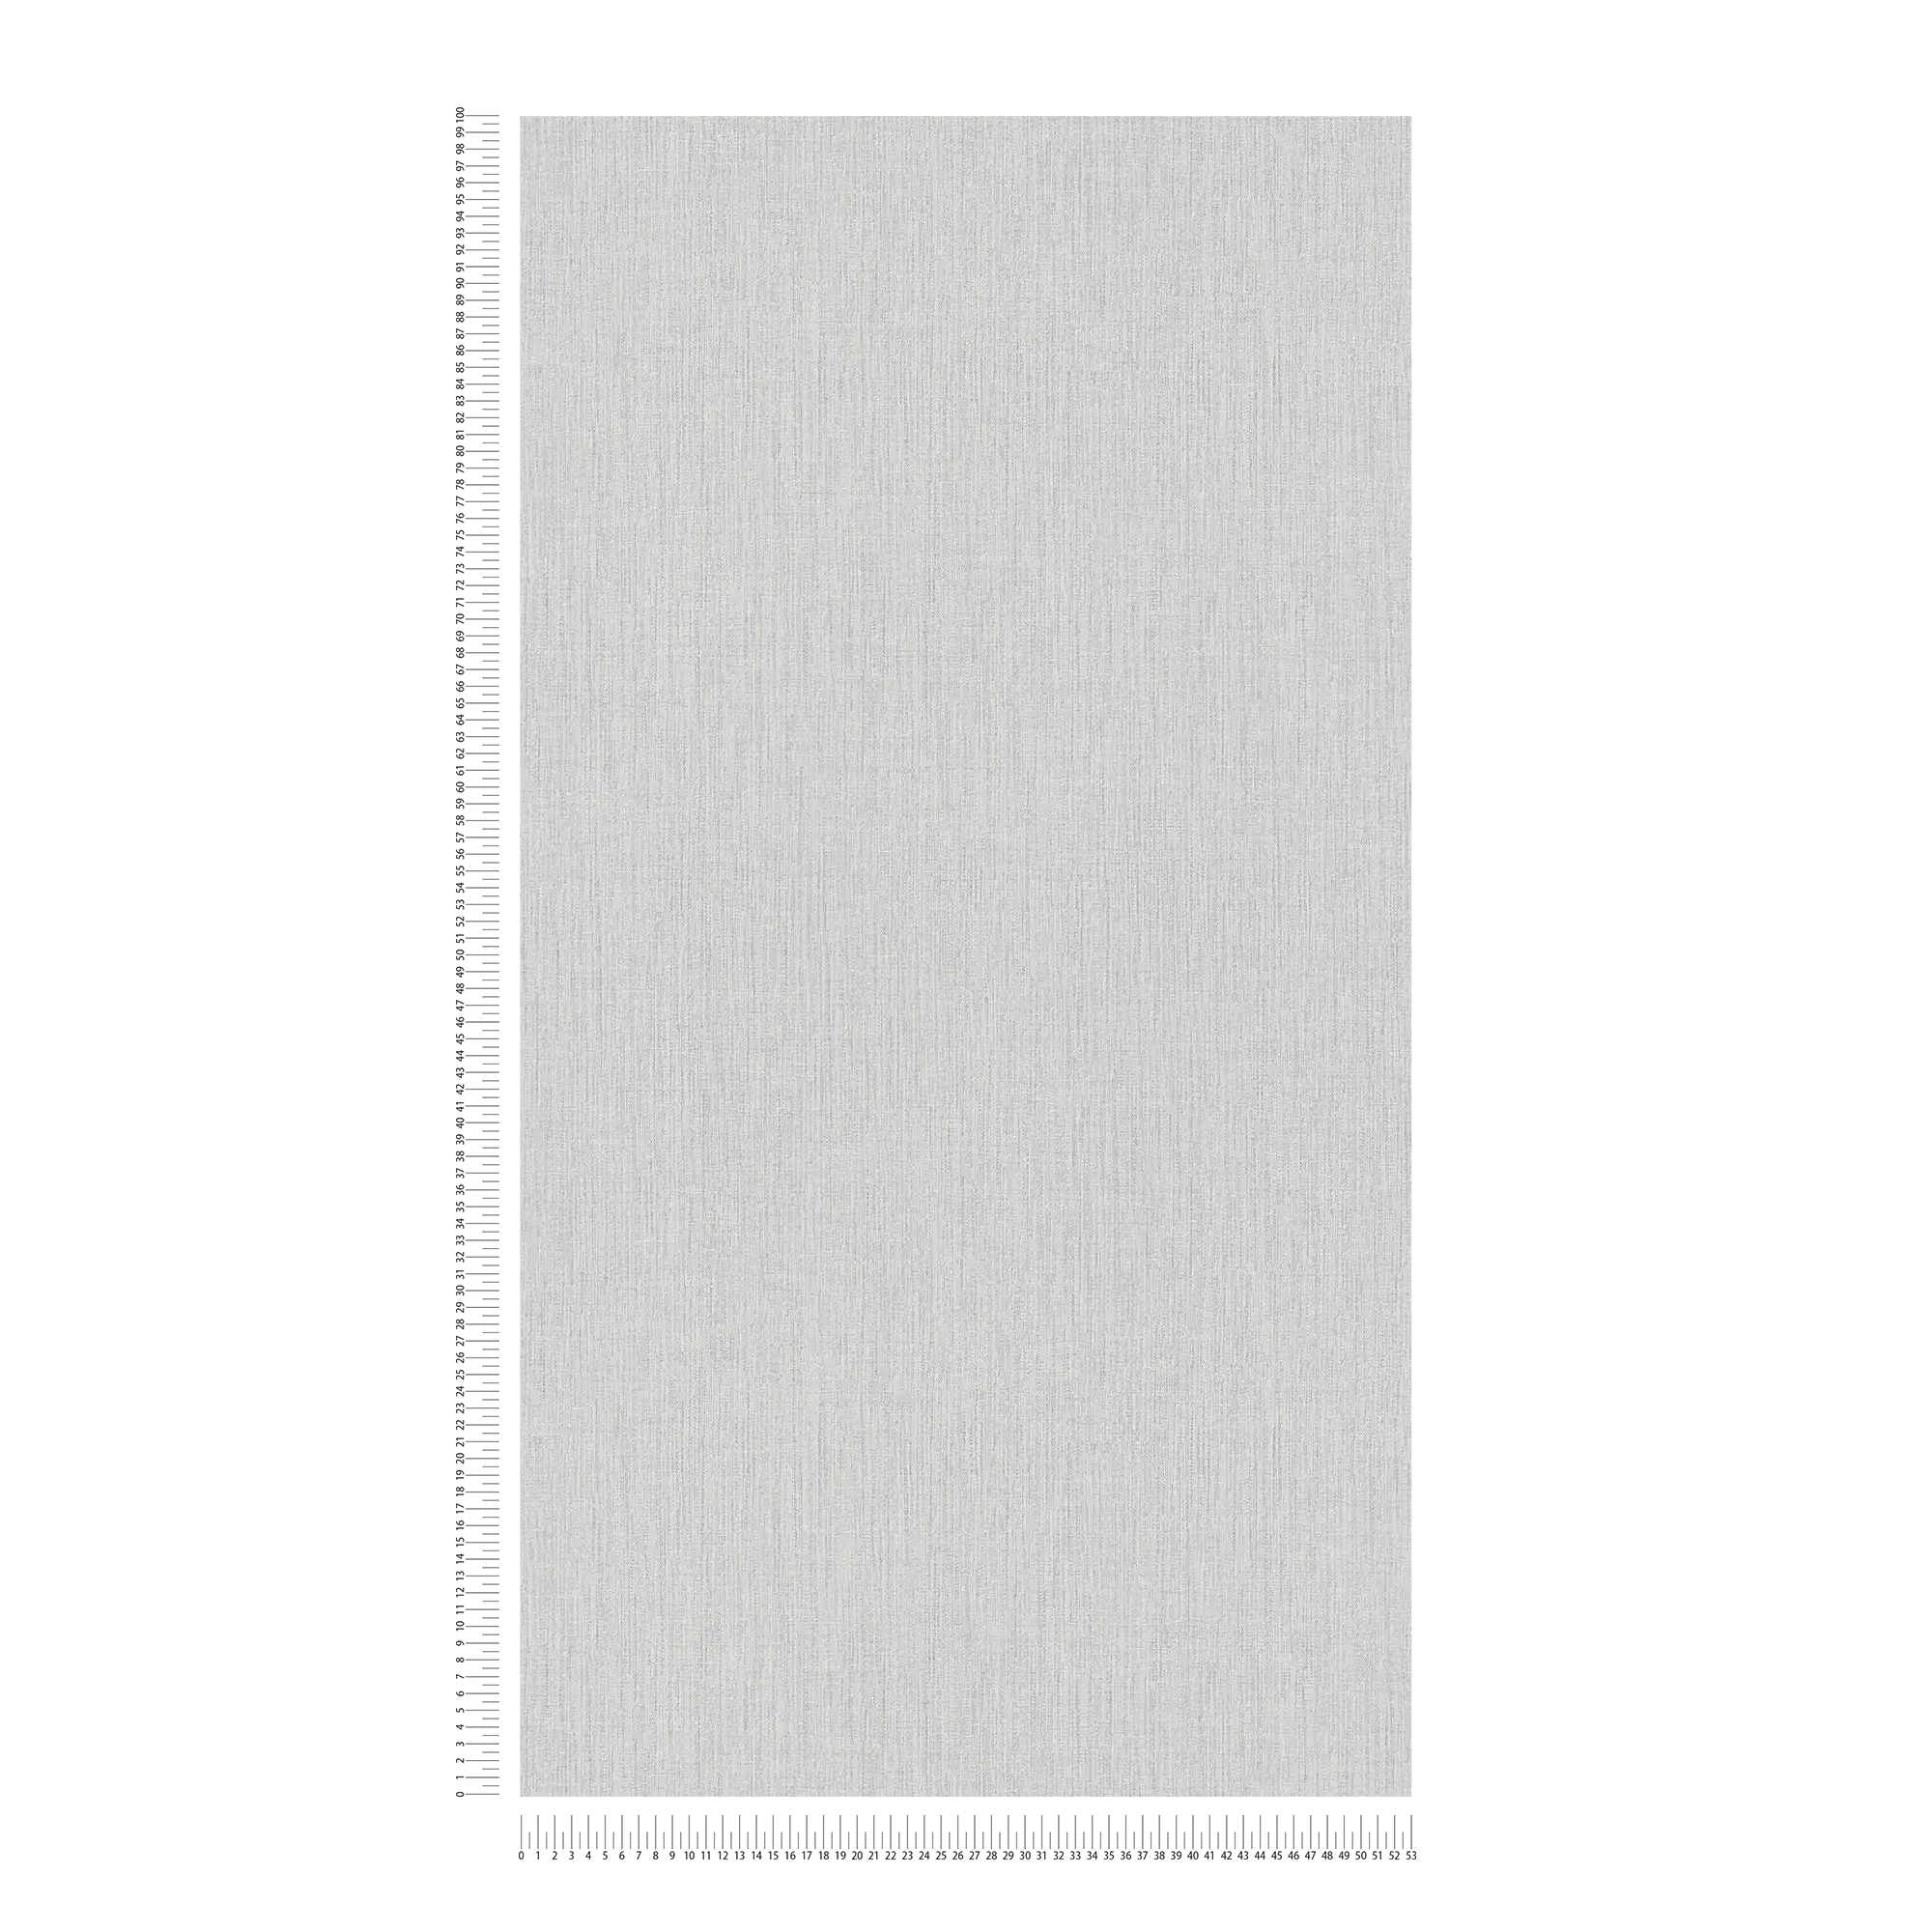             Carta da parati in tessuto non tessuto effetto lino con motivi tono su tono - rosa, grigio, bianco
        